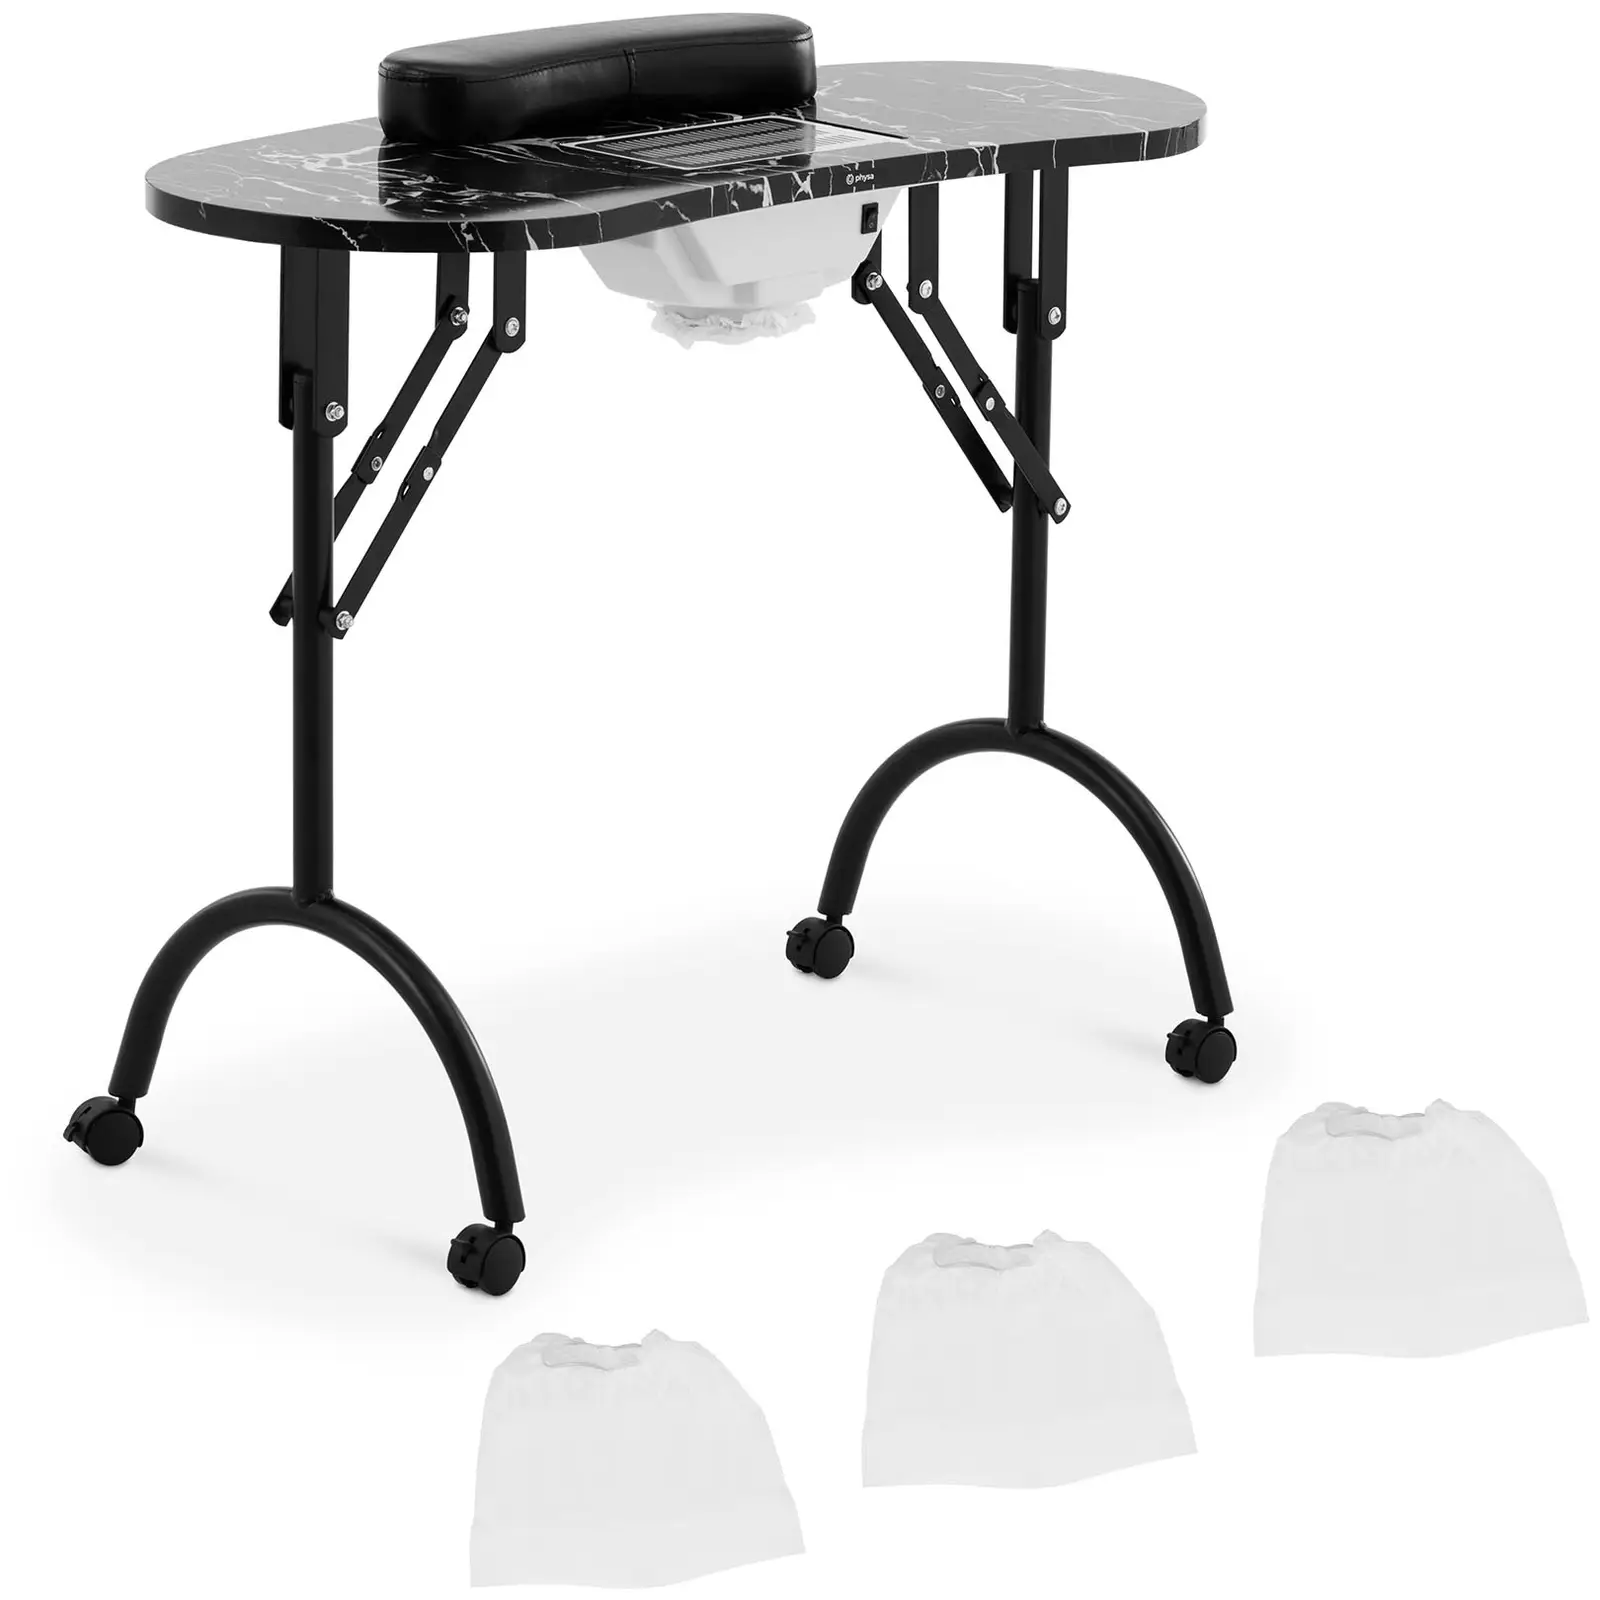 Mesa para manicura plegable - negra - 4 ruedas - aspirado